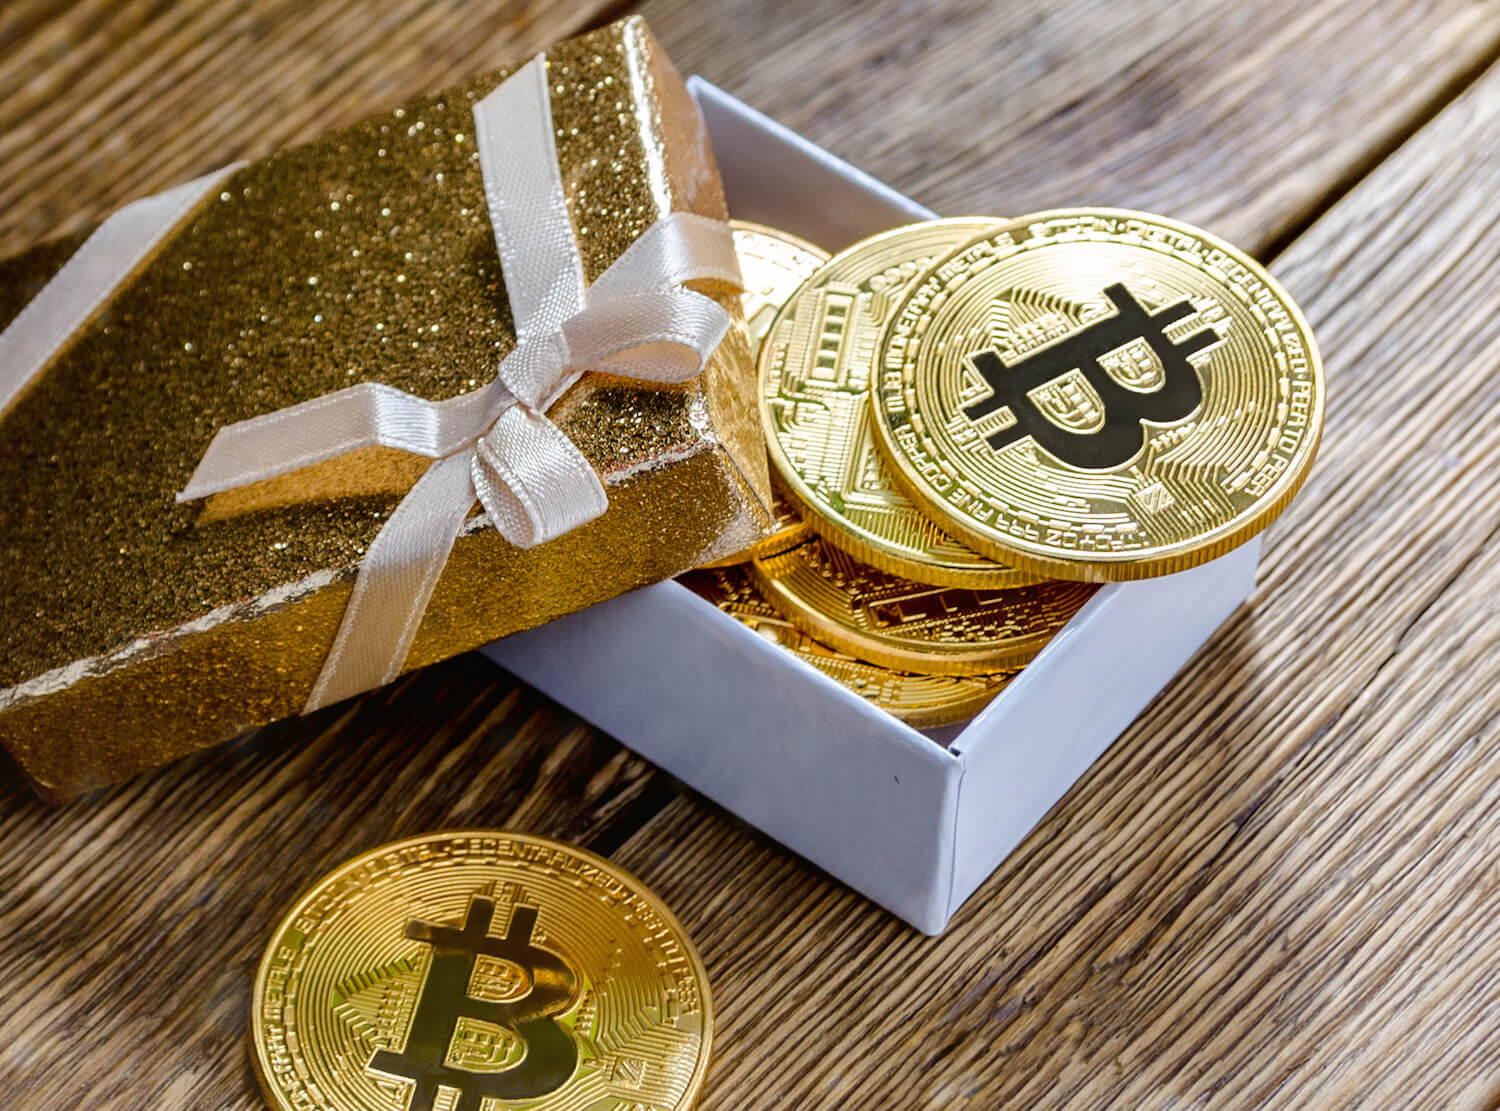 Bitcoin As A Gift